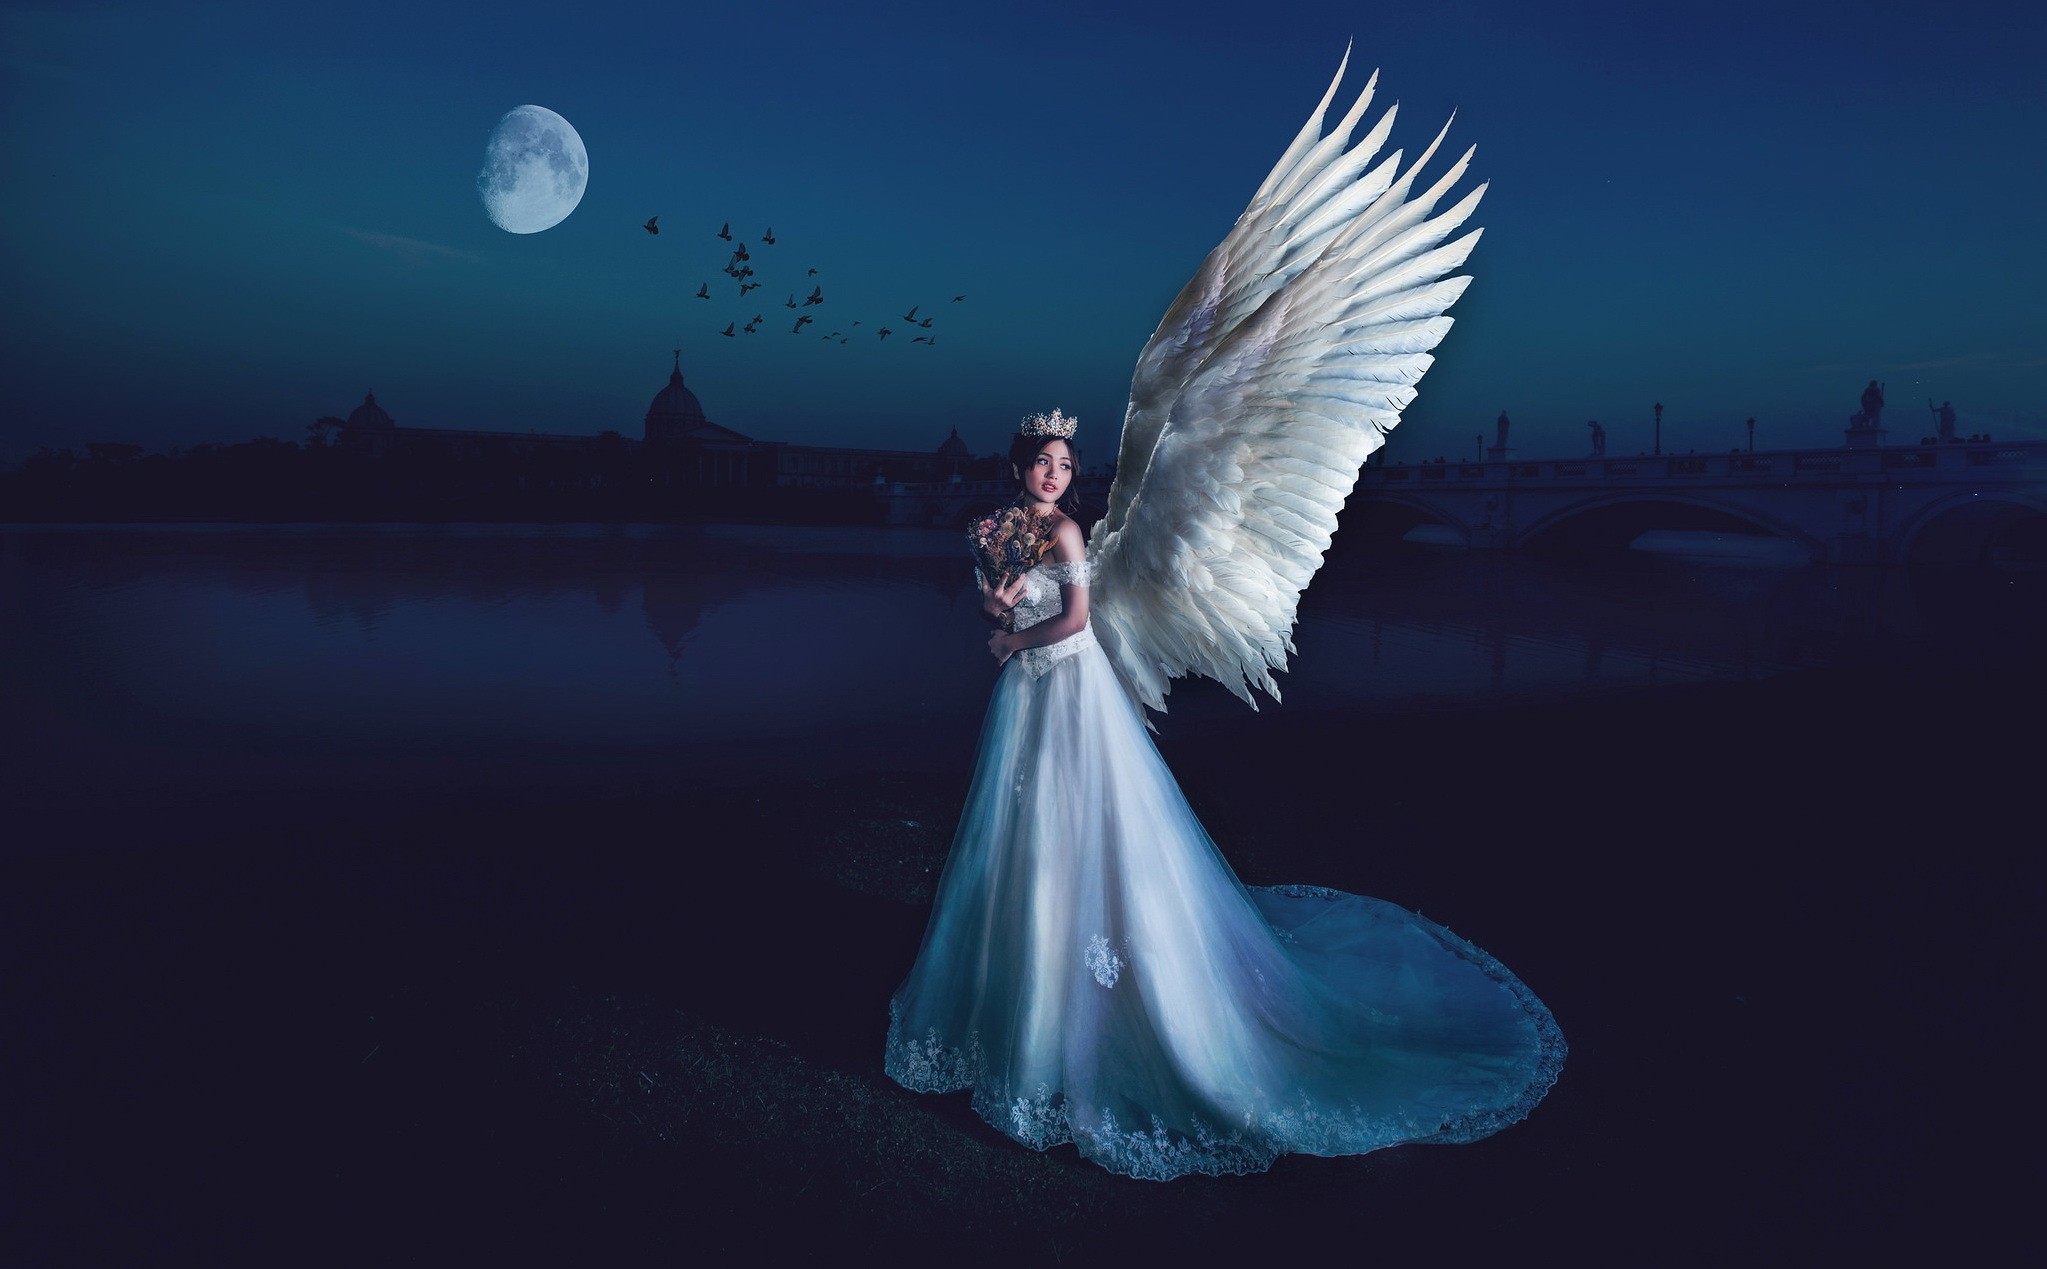 People 2047x1269 fantasy art night angel women wings crown Moon birds white dress dress white clothing bouquet sky women outdoors model